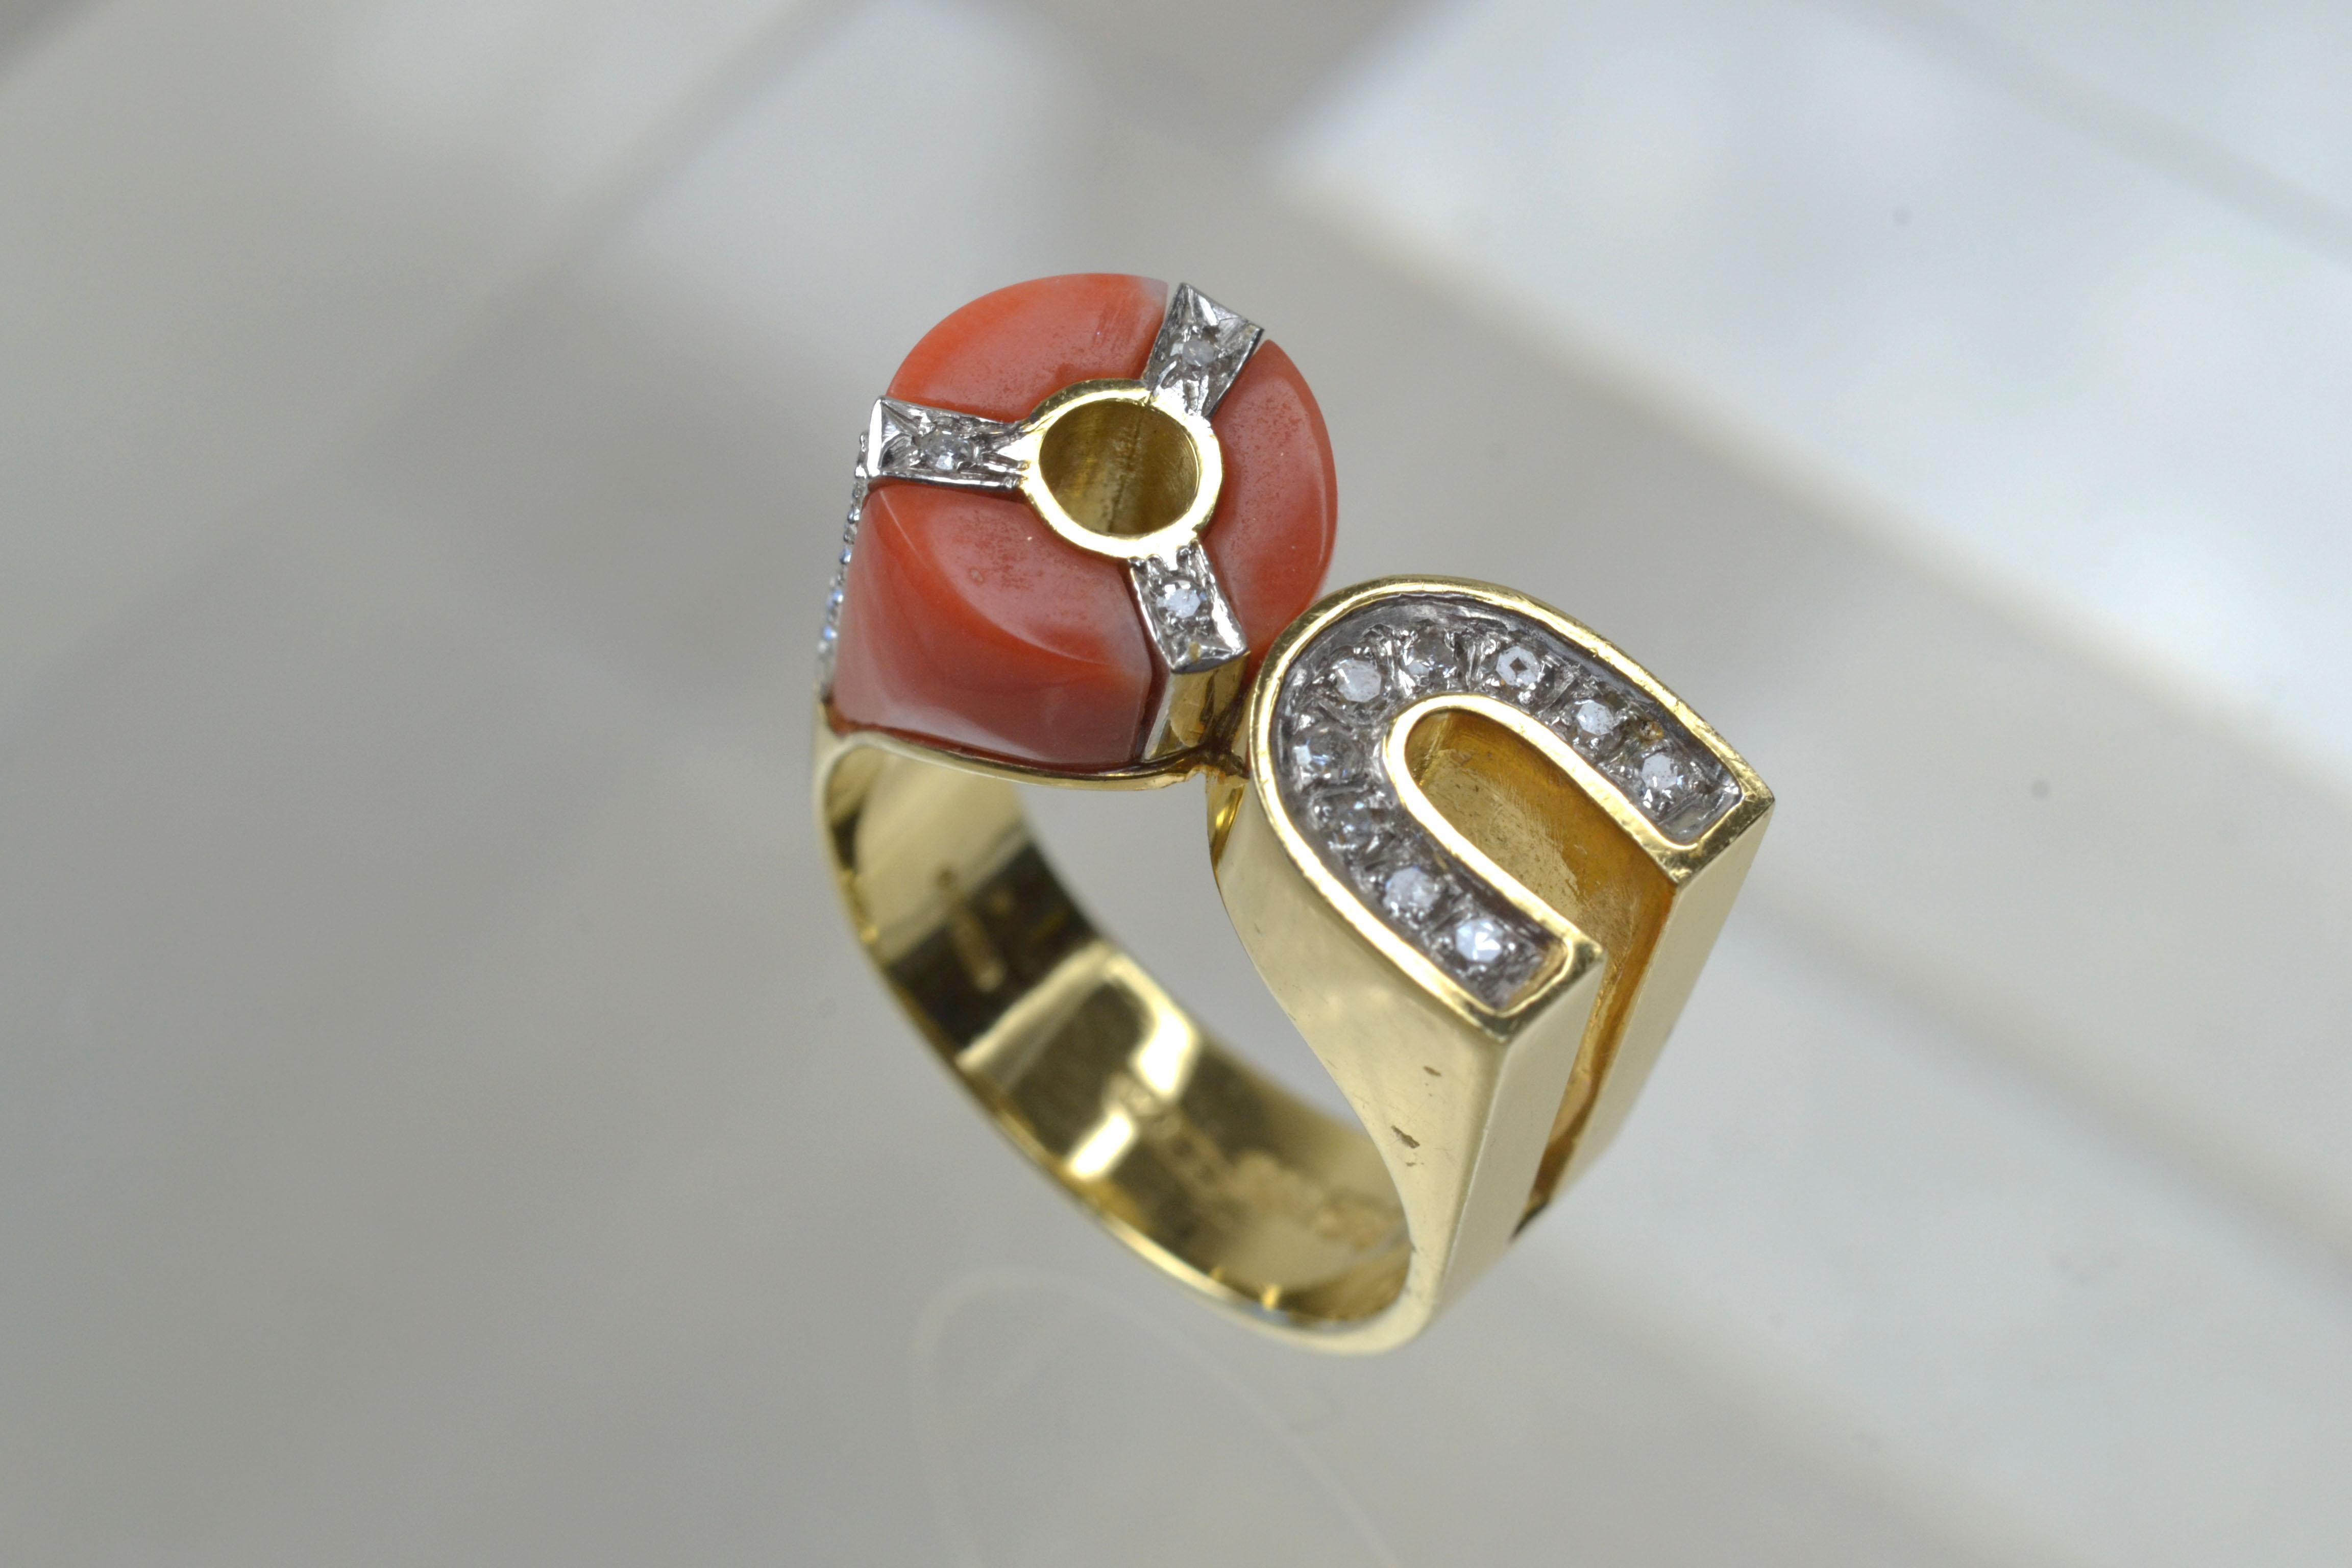 Vintage 14k Gold Koralle und Diamant Form Ring One-of-a-kind

Dieser Vintage-Ring mit Koralle und Diamanten aus den 80er Jahren ist wirklich ein einzigartiges Design. Auf der einen Seite hat er die Form eines mit Diamanten besetzten Hufeisens, auf